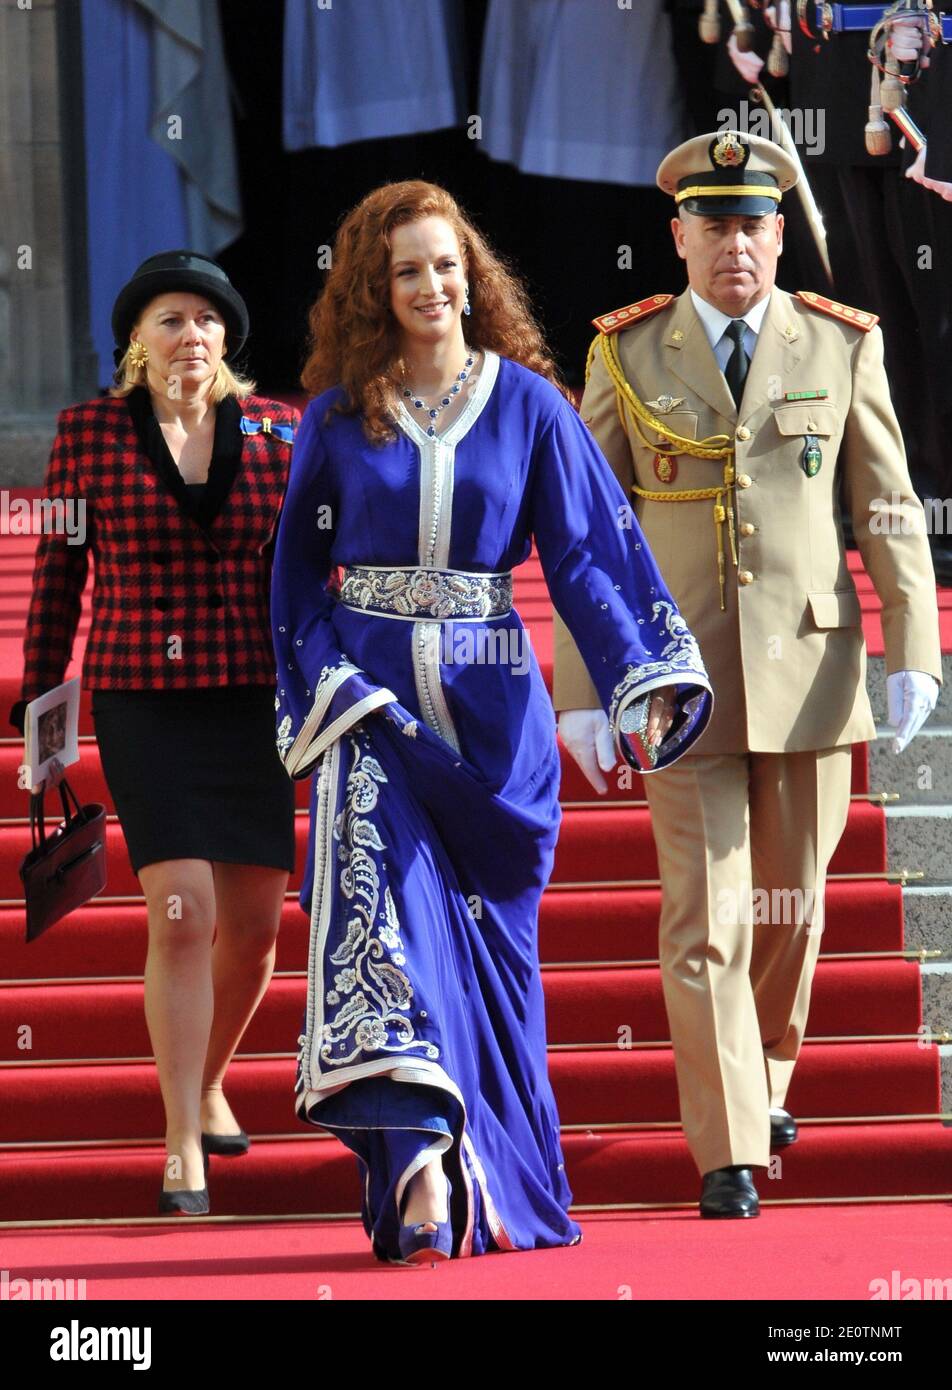 La princesse Lalla Salma du Maroc le roi quitte la cathédrale notre-Dame de Luxembourg après leur cérémonie de mariage, à Luxembourg, le 20 octobre 2012. Le Grand-duc héréditaire de Luxembourg, âgé de 30 ans, est le dernier prince héréditaire d'Europe à se marier, épousant sa mariée de 28 ans de la comtesse belge dans une somptueuse cérémonie de 2 jours. Photo de Jeremy Charriau/ABACAPRESS.COM Banque D'Images